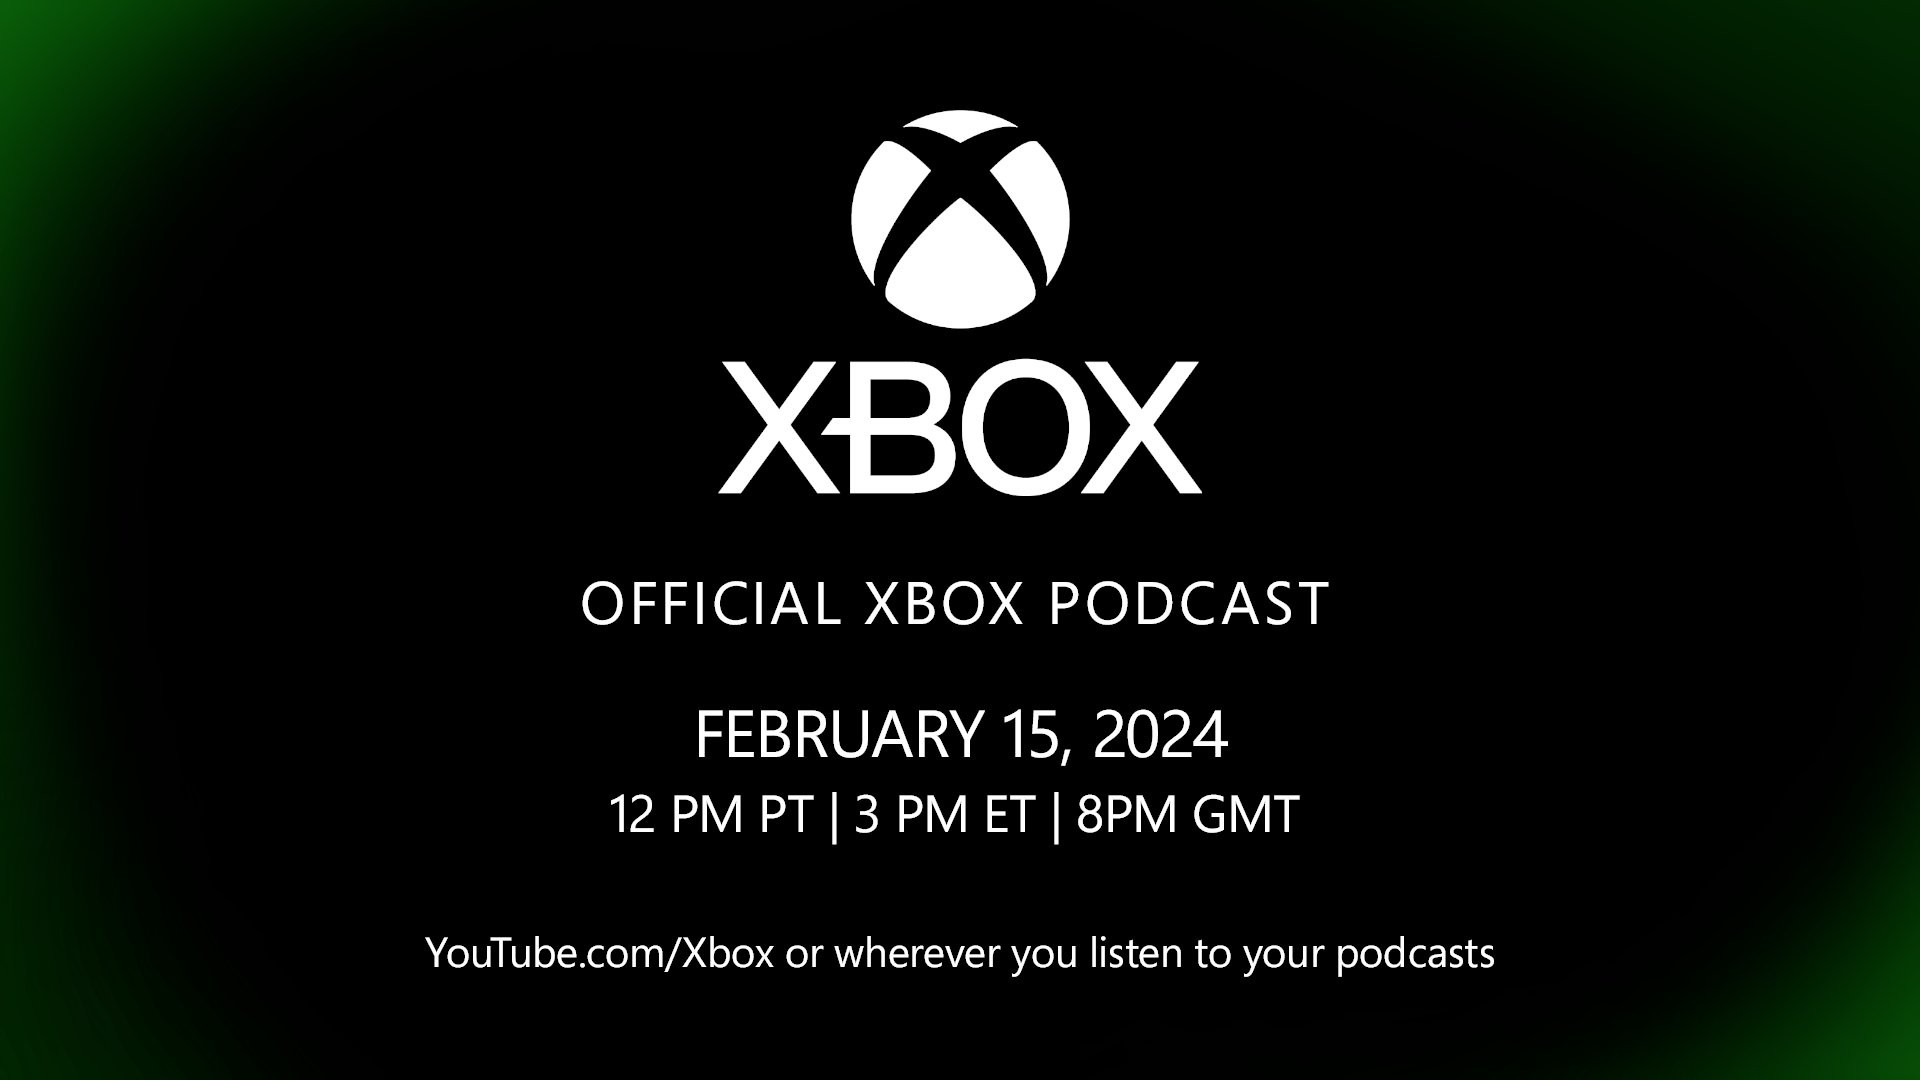 Toekomst van Xbox: hoe kun je het evenement live bekijken en wat kun je verwachten?  |  X-Box